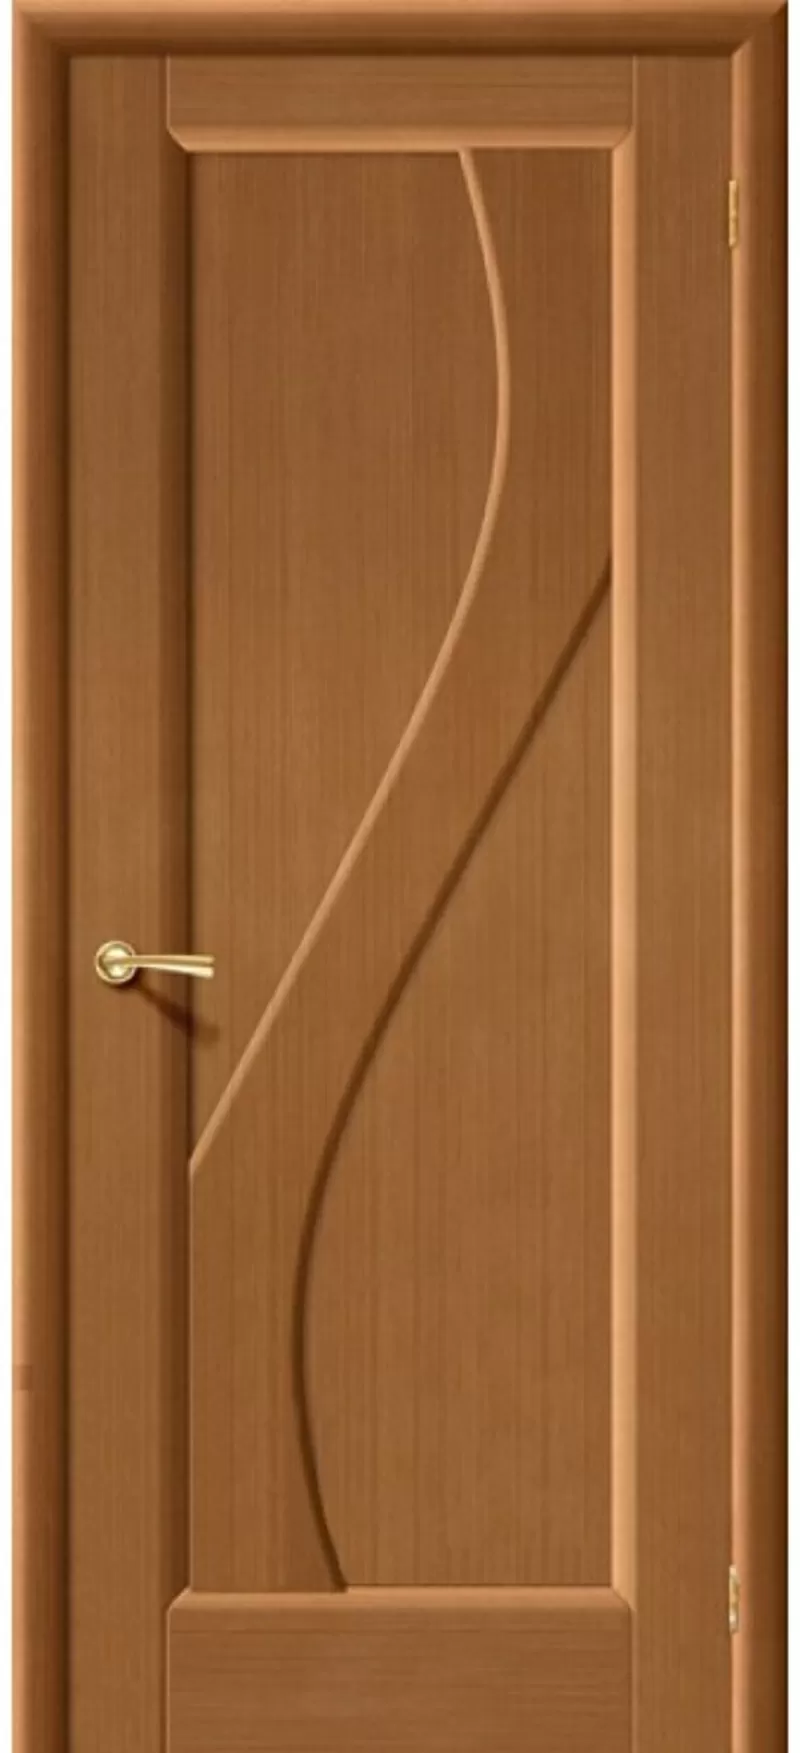 АКЦИЯ дверь из массива от 1850 т.р. в РАССРОЧКУ 0% на 3 месяца в бел. руб 4